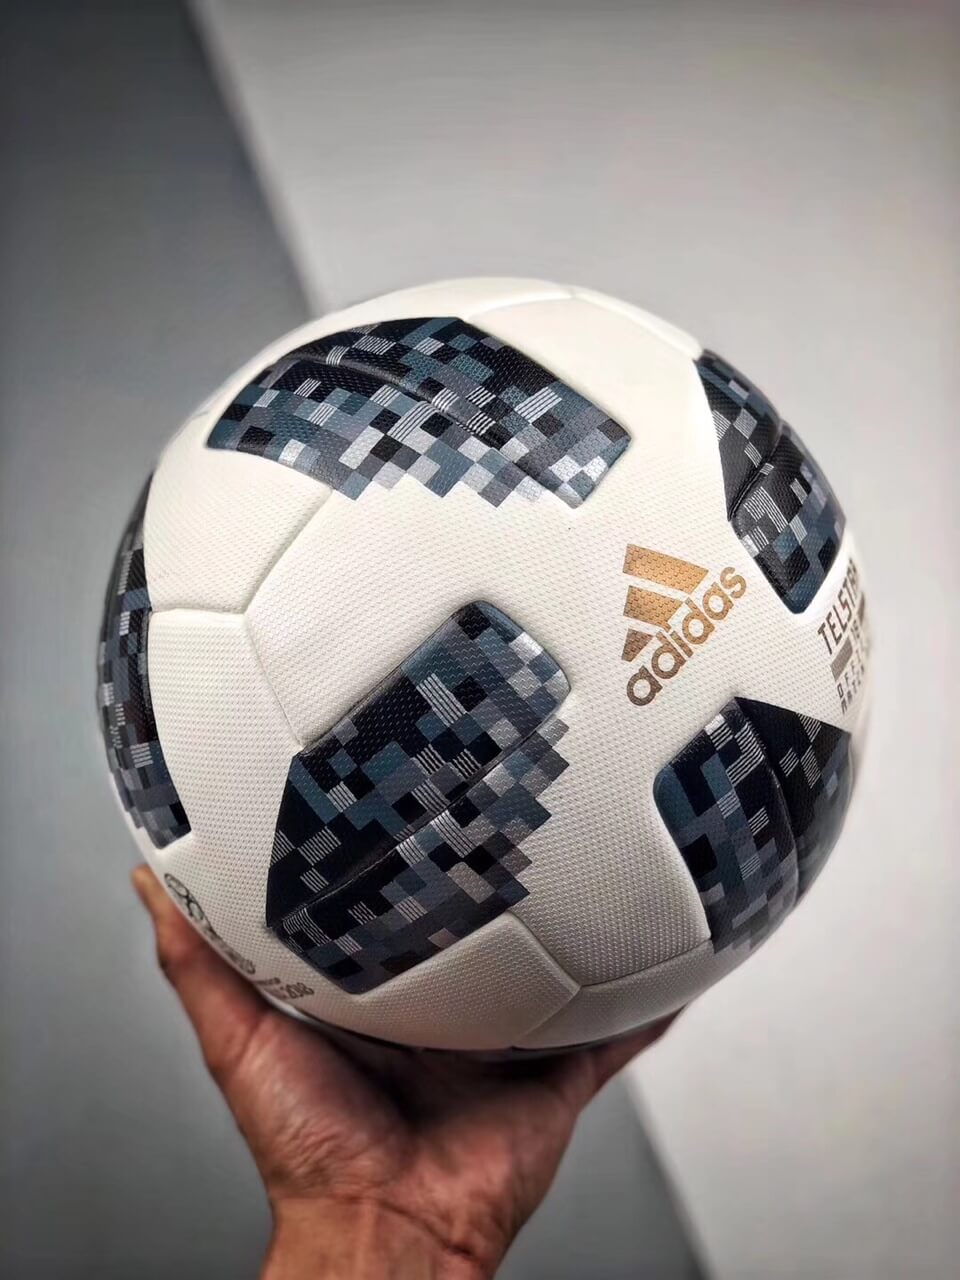 telstar soccer ball